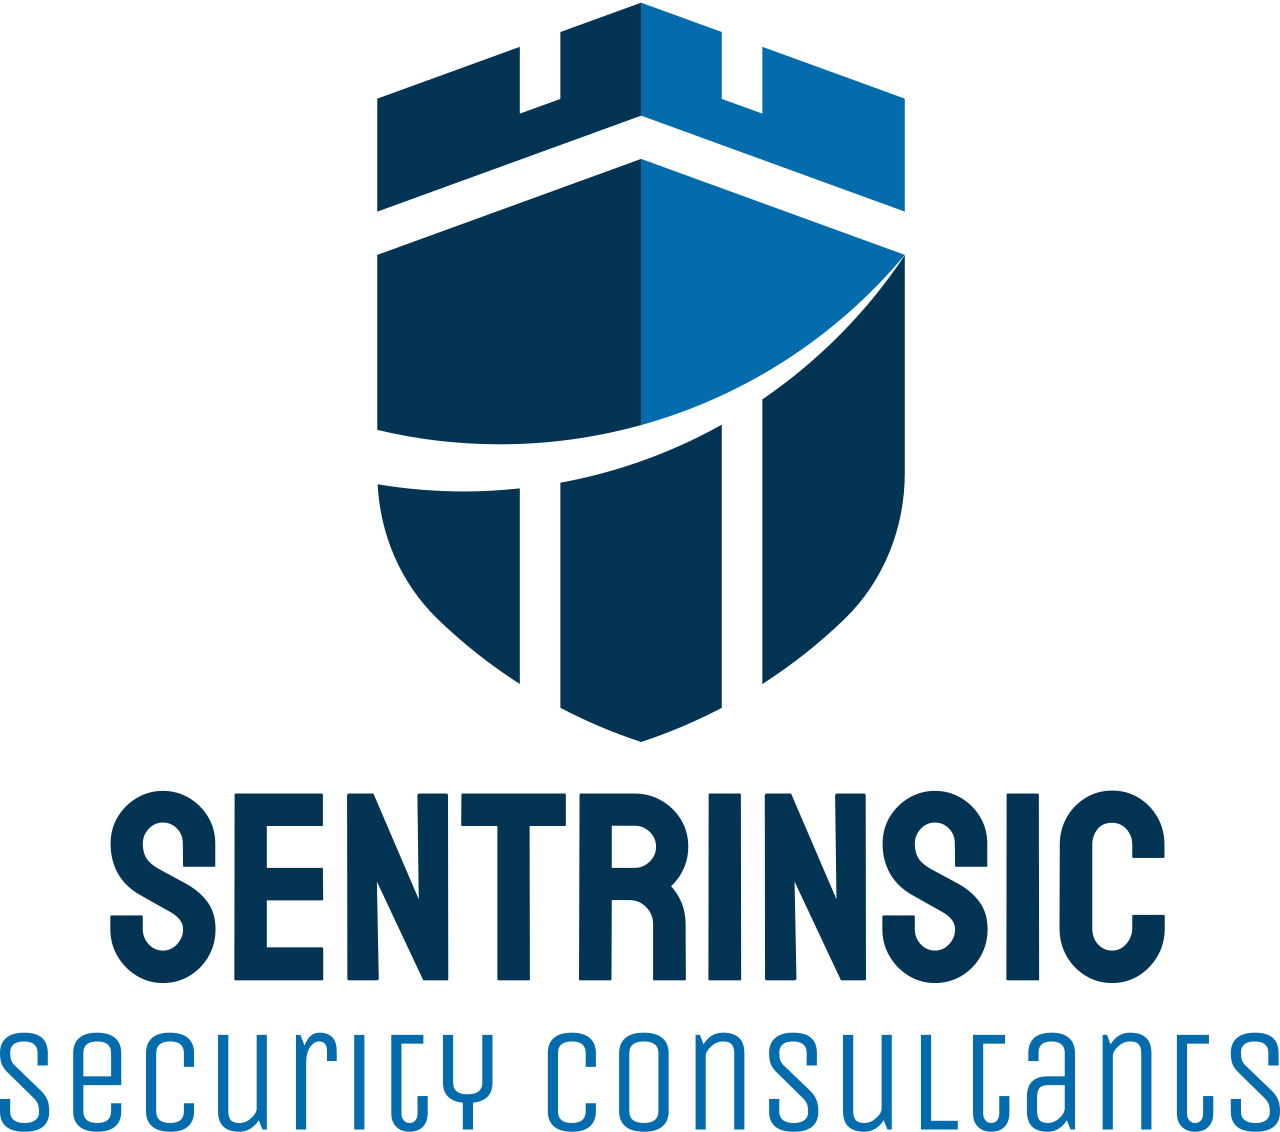 Sentrinsic's logo